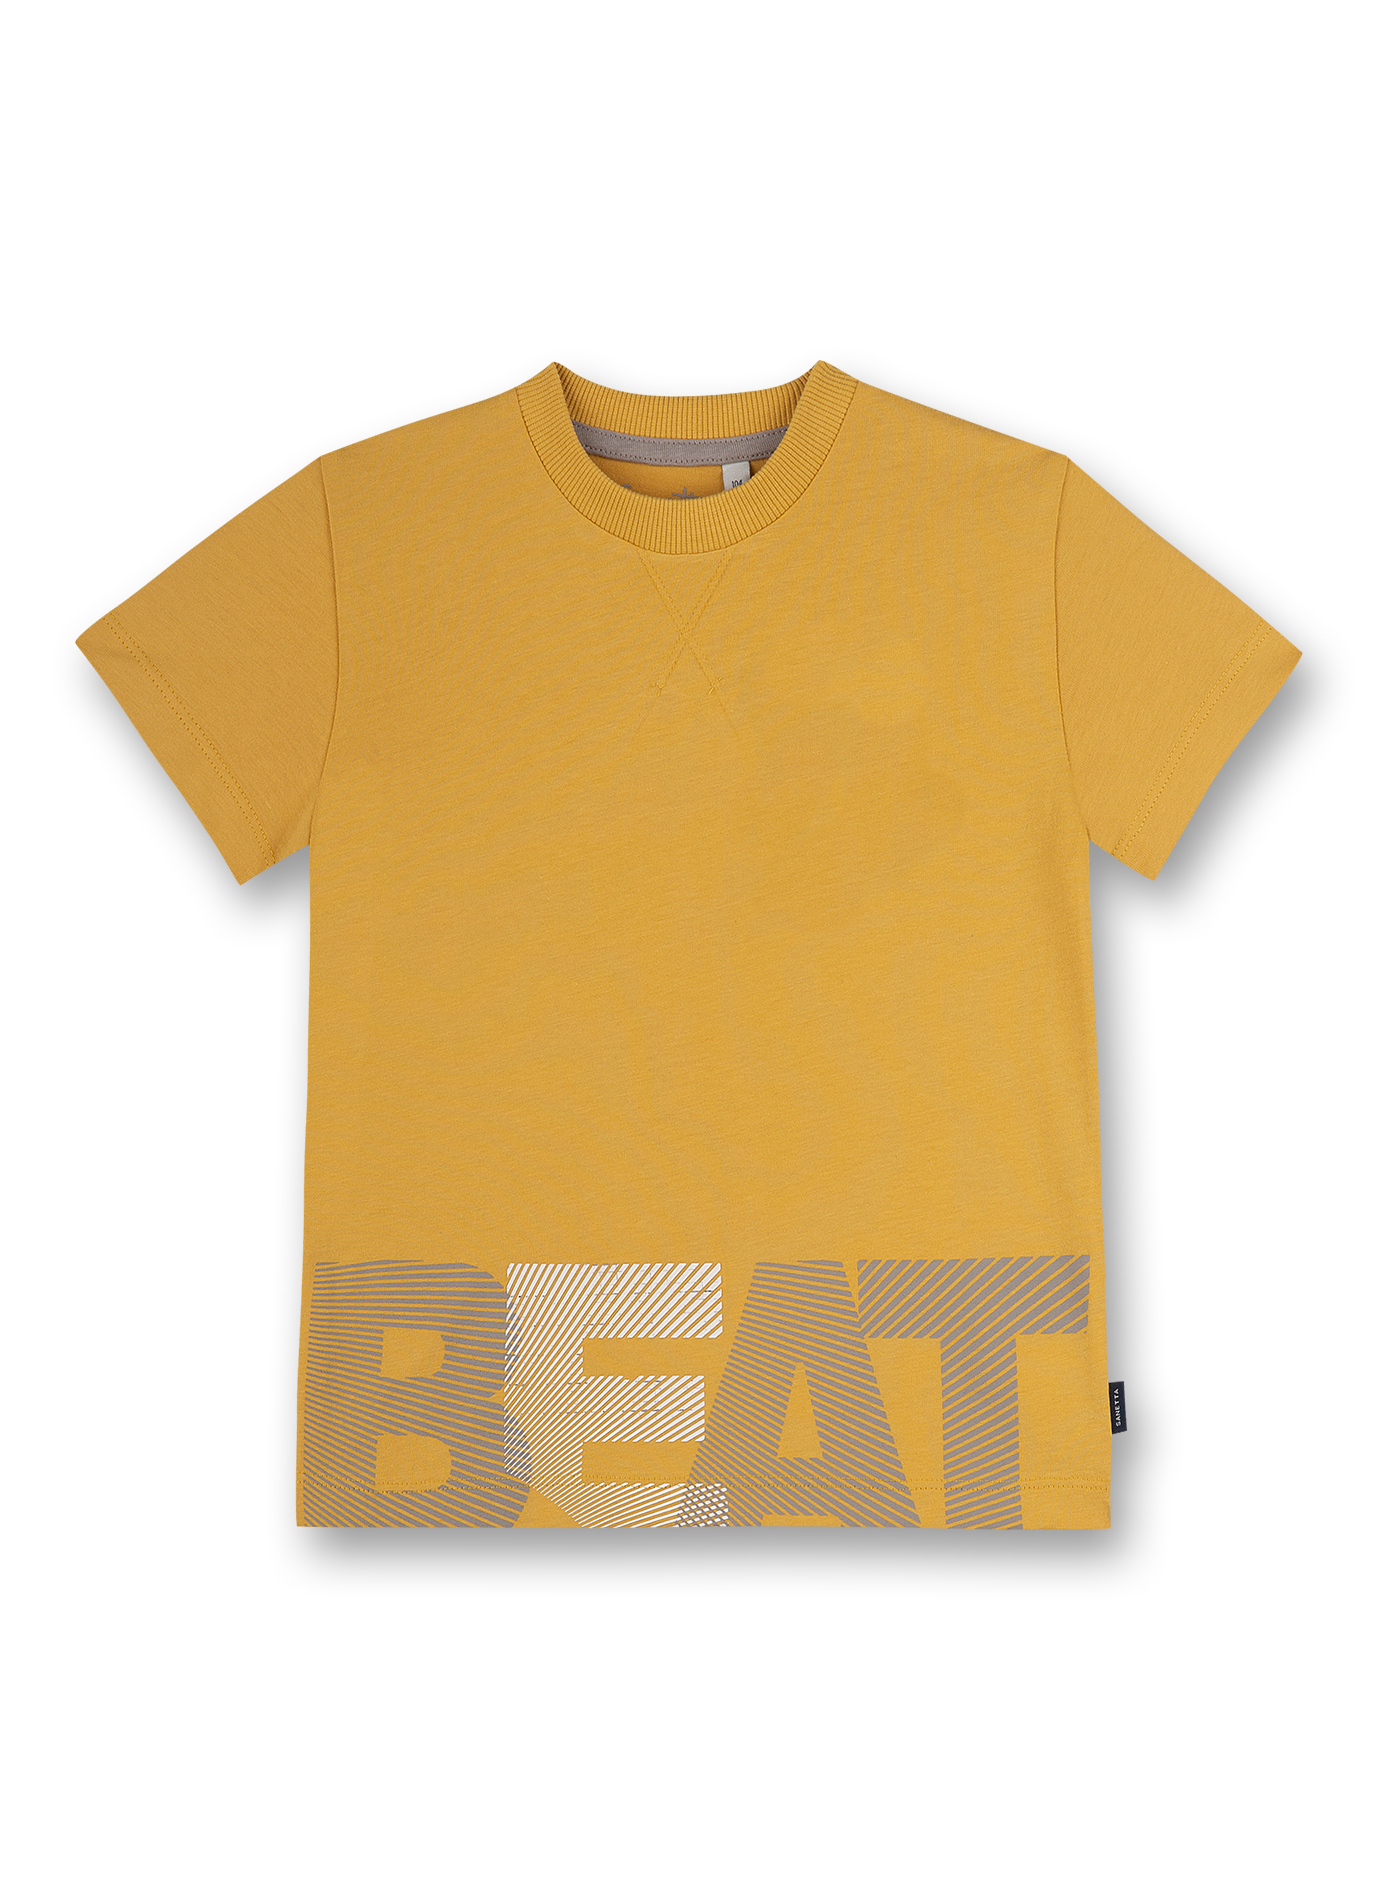 Jungen T-Shirt Gelb Music